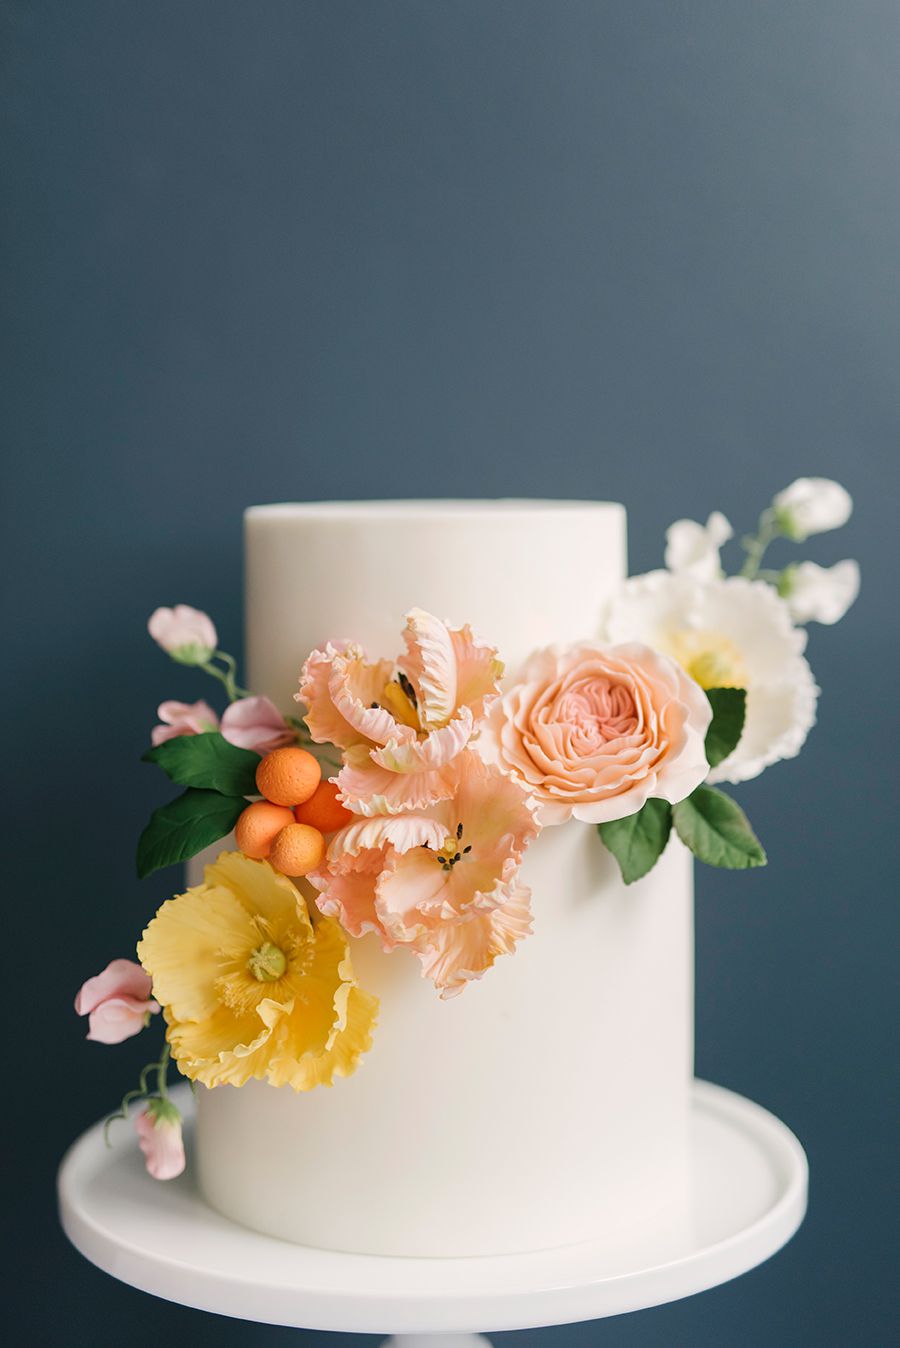 white fondant wedding cake with flowers